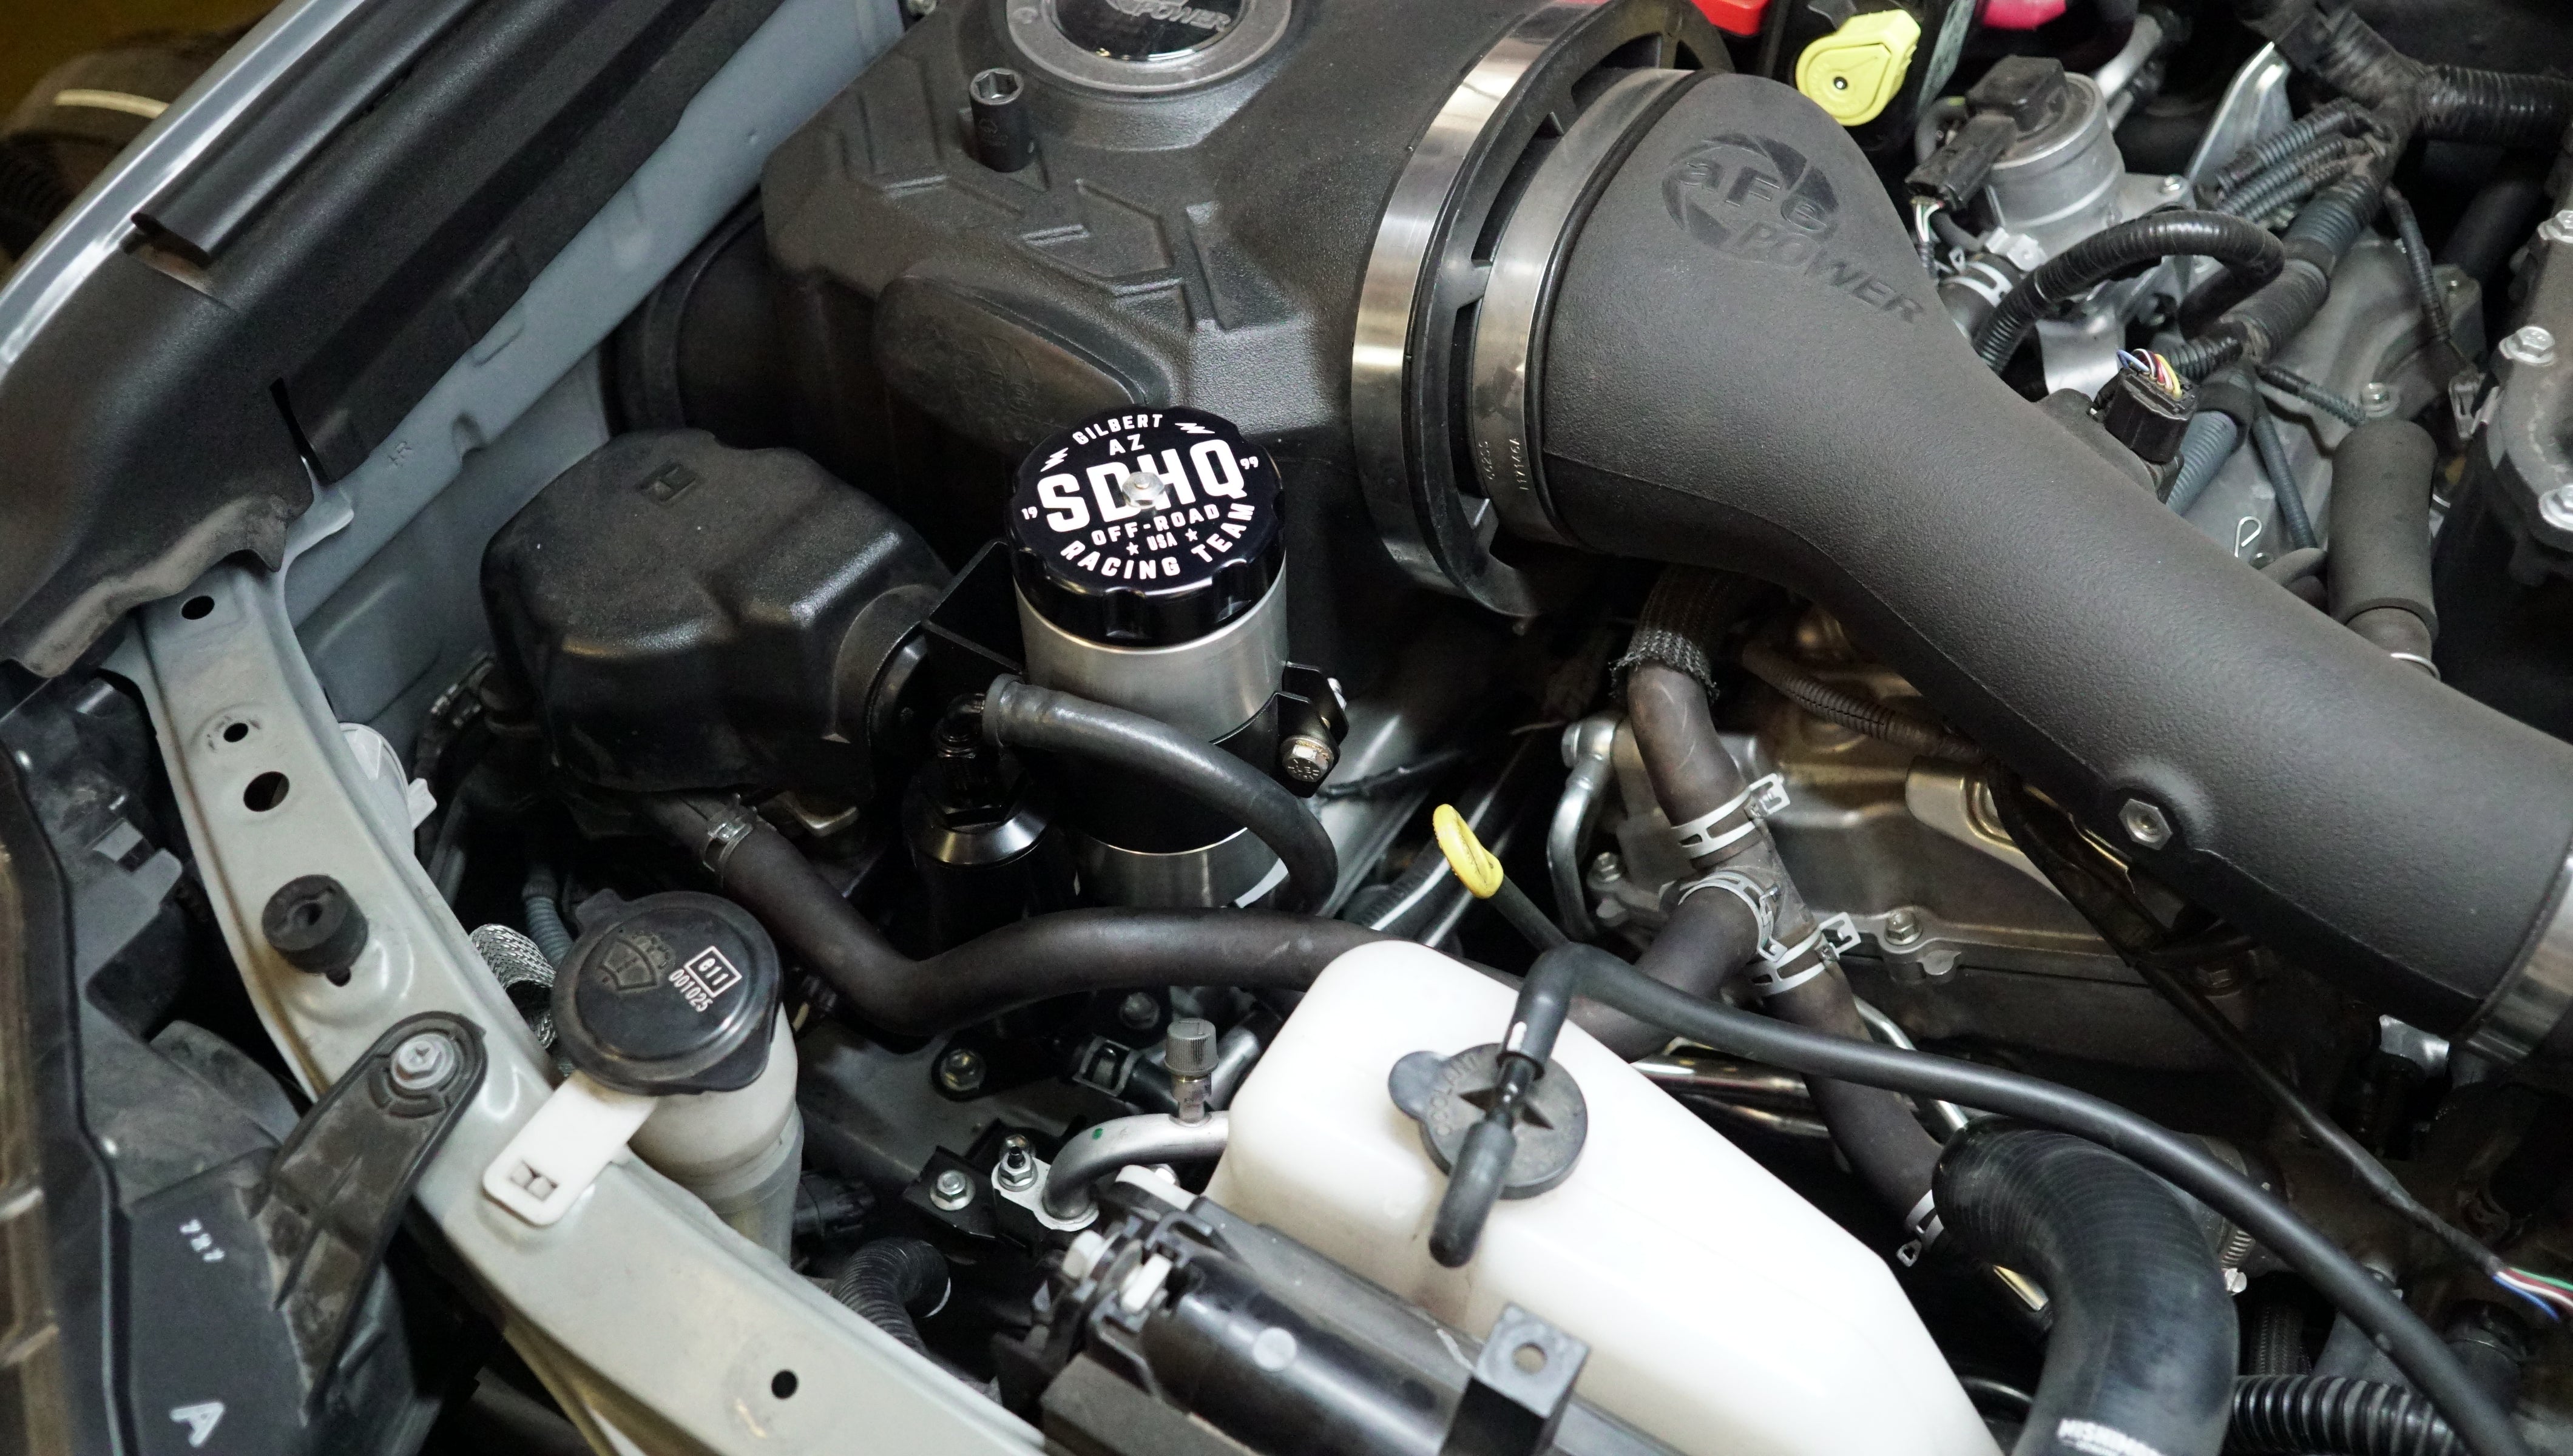 '10-23 Lexus GX460 SDHQ Built Power Steering Reservoir Kit display